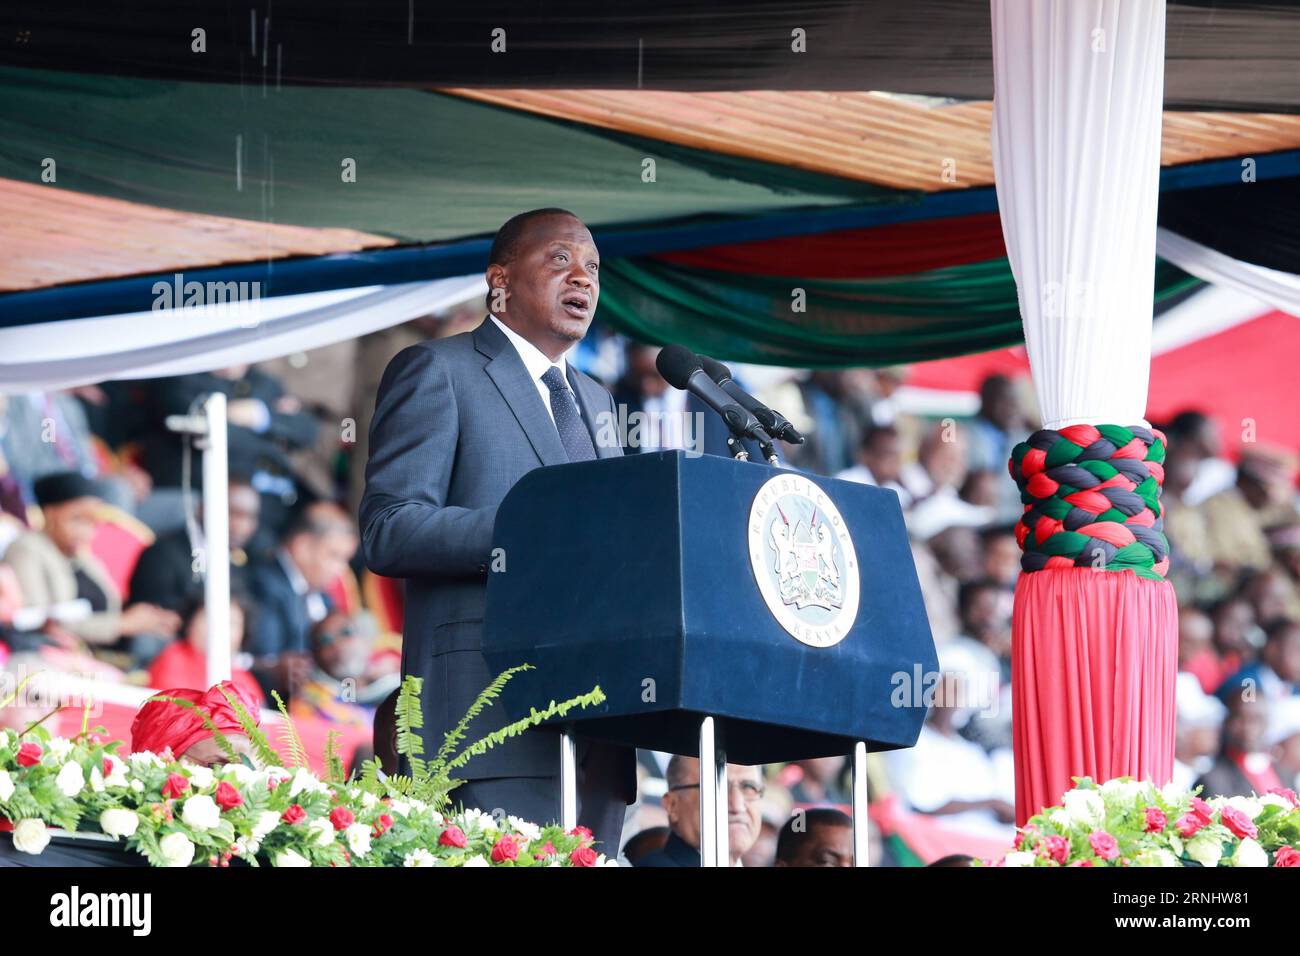 Feierlichkeiten zu Kenias 53. Unabhängigkeitstag in Nairobi (161212) -- NAIROBI, 12 dicembre 2016 -- il presidente keniota Uhuru Kenyatta tiene un discorso durante le celebrazioni per celebrare il 53 ° anniversario dell'indipendenza della nazione al Nyayo National Stadium di Nairobi, Kenya, 12 dicembre 2016. ) (dtf) GIORNATA DELL'INDIPENDENZA KENYA-NAIROBI PanxSiwei PUBLICATIONxNOTxINxCHN celebrazioni in Kenya 53 giorno dell'indipendenza a Nairobi 161212 Nairobi DEC 12 2016 il presidente keniota Uhuru Kenyatta tiene un discorso durante le celebrazioni per celebrare il 53 ° anniversario dell'indipendenza della nazione AL Nyayo National Stage Foto Stock